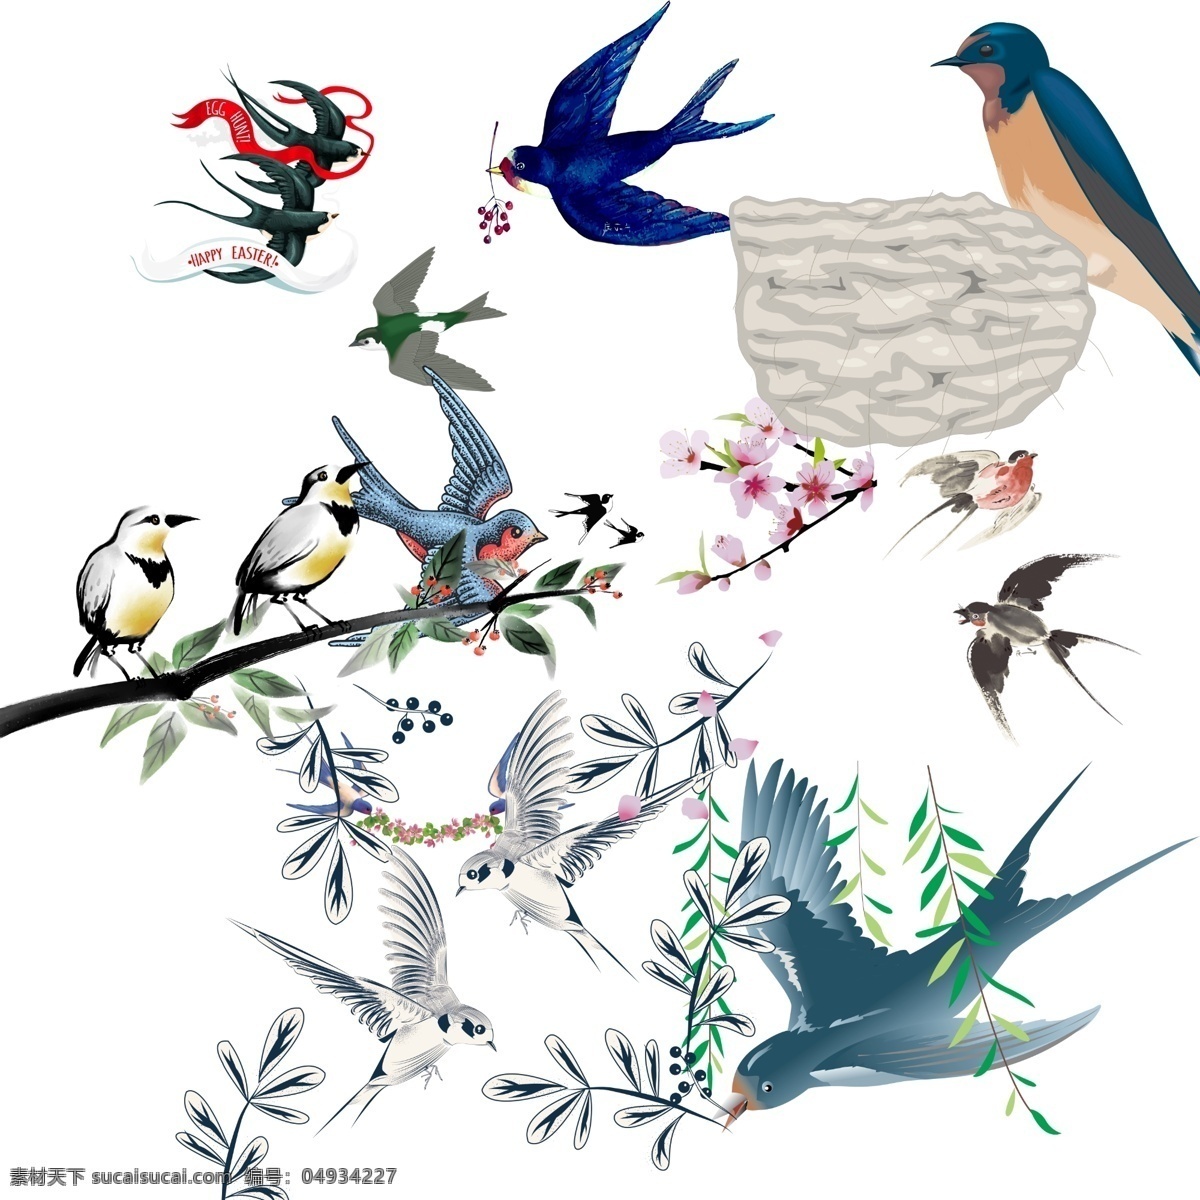 各式 燕子 飞翔 插画 元素 动物 设计素材 设计元素 手绘燕子 燕子插画 燕子素材